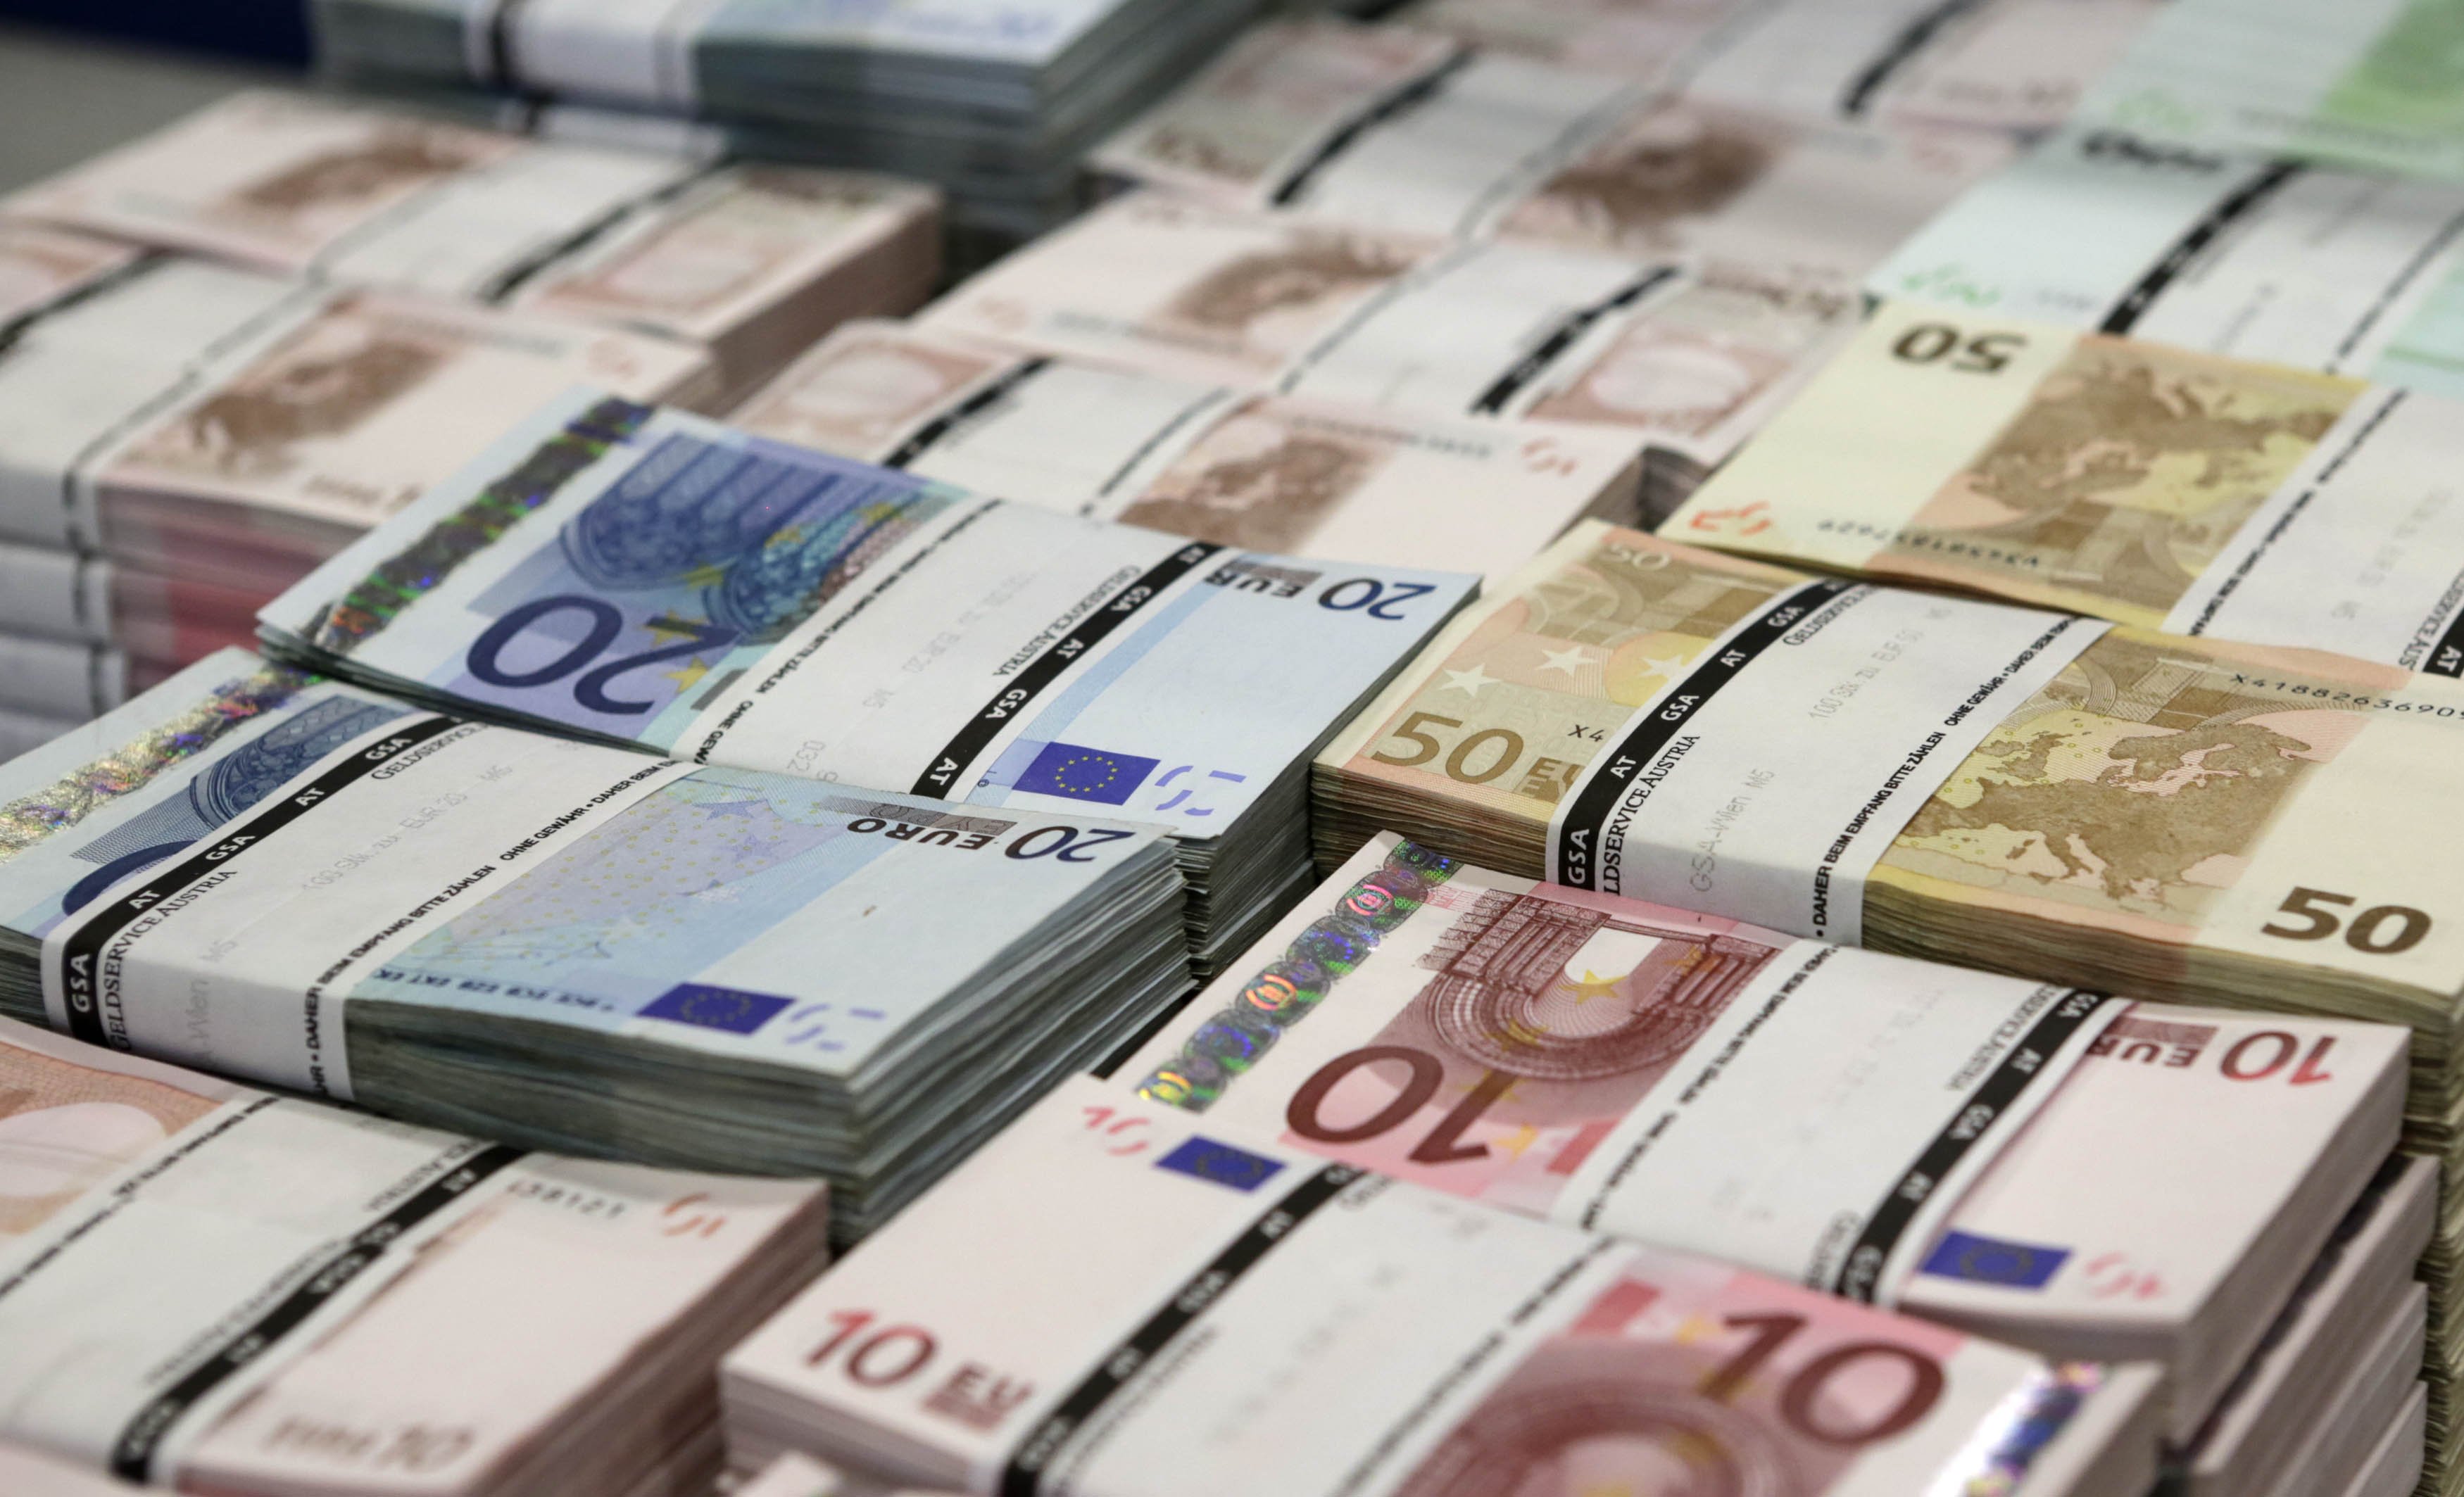 Primary surplus 2.65 billion euros in October 2014